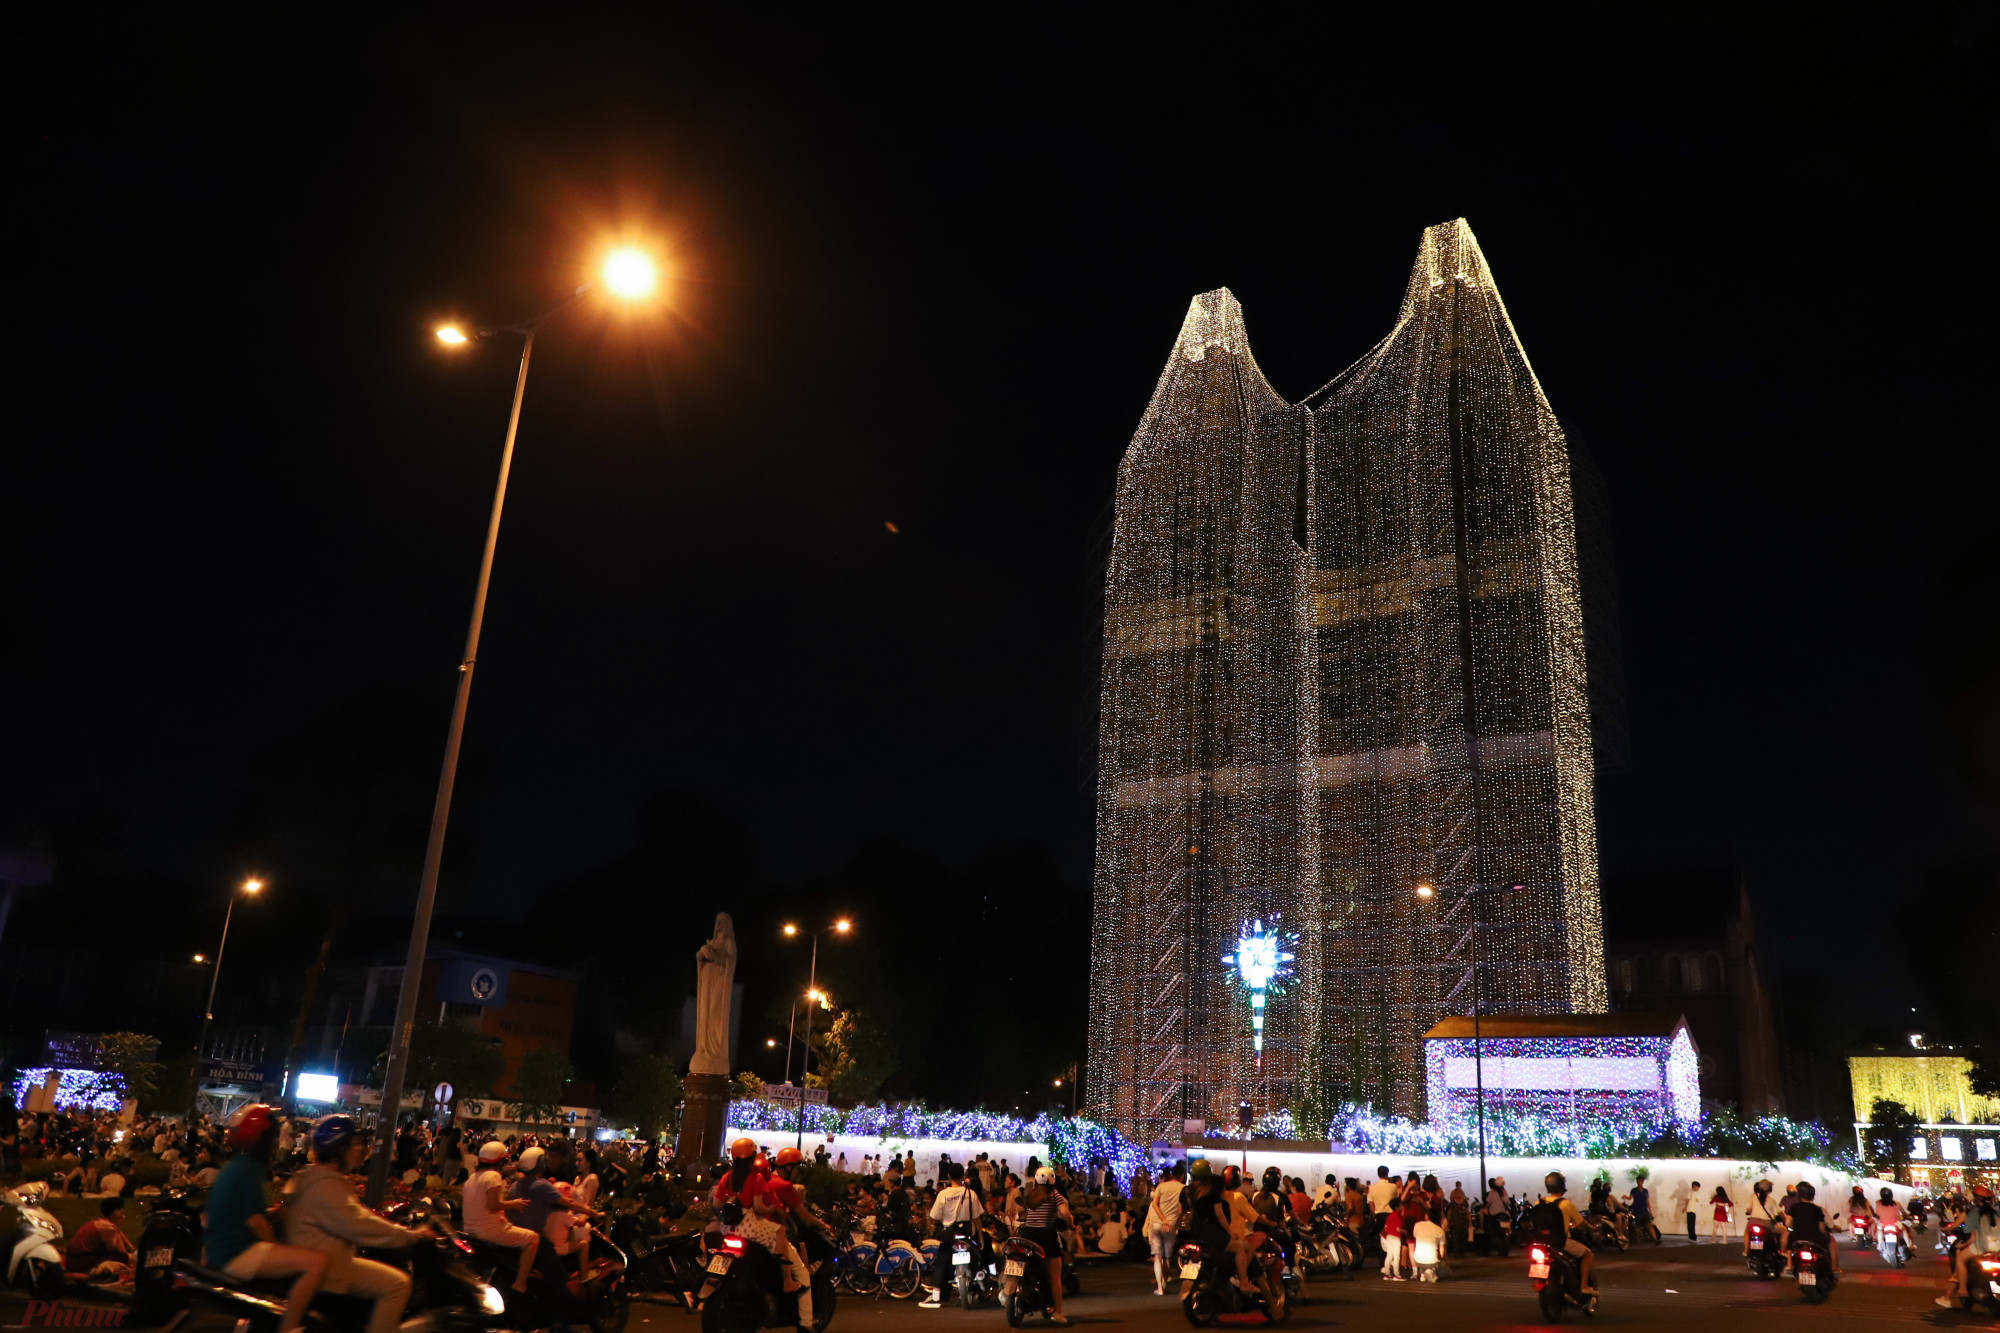 Nhà thờ Đức Bà cũng được phủ lên một lớp ánh sáng tạo từ hàng nghìn chiếc đèn thu hút người dân.